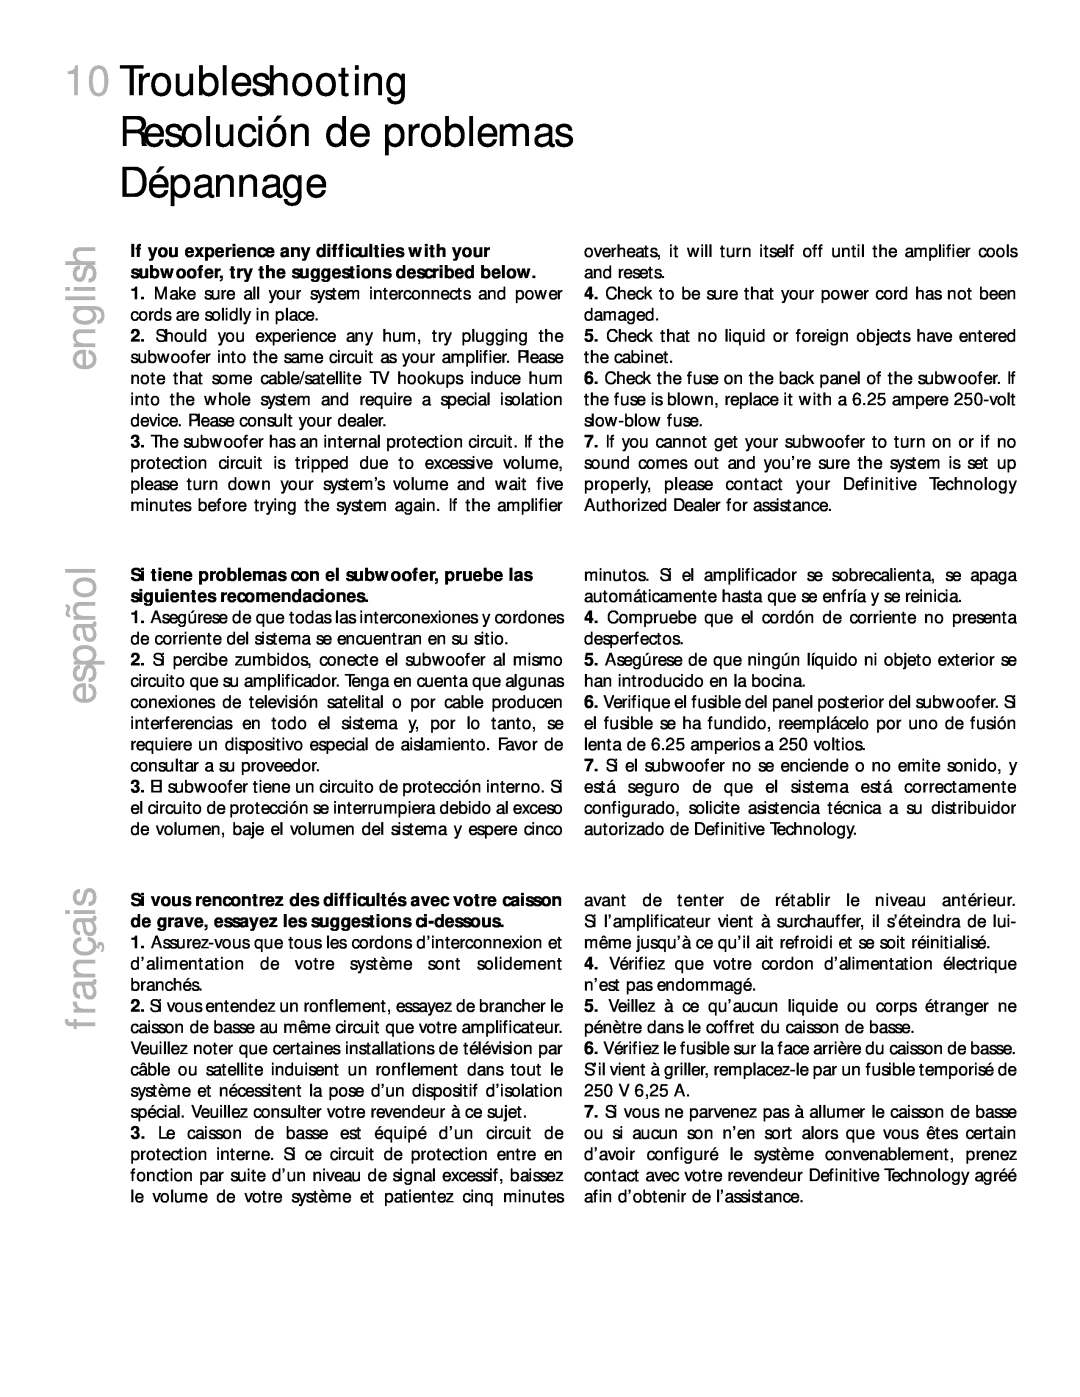 Definitive Technology 2000 owner manual english, español, français, 250V 6,25 A 